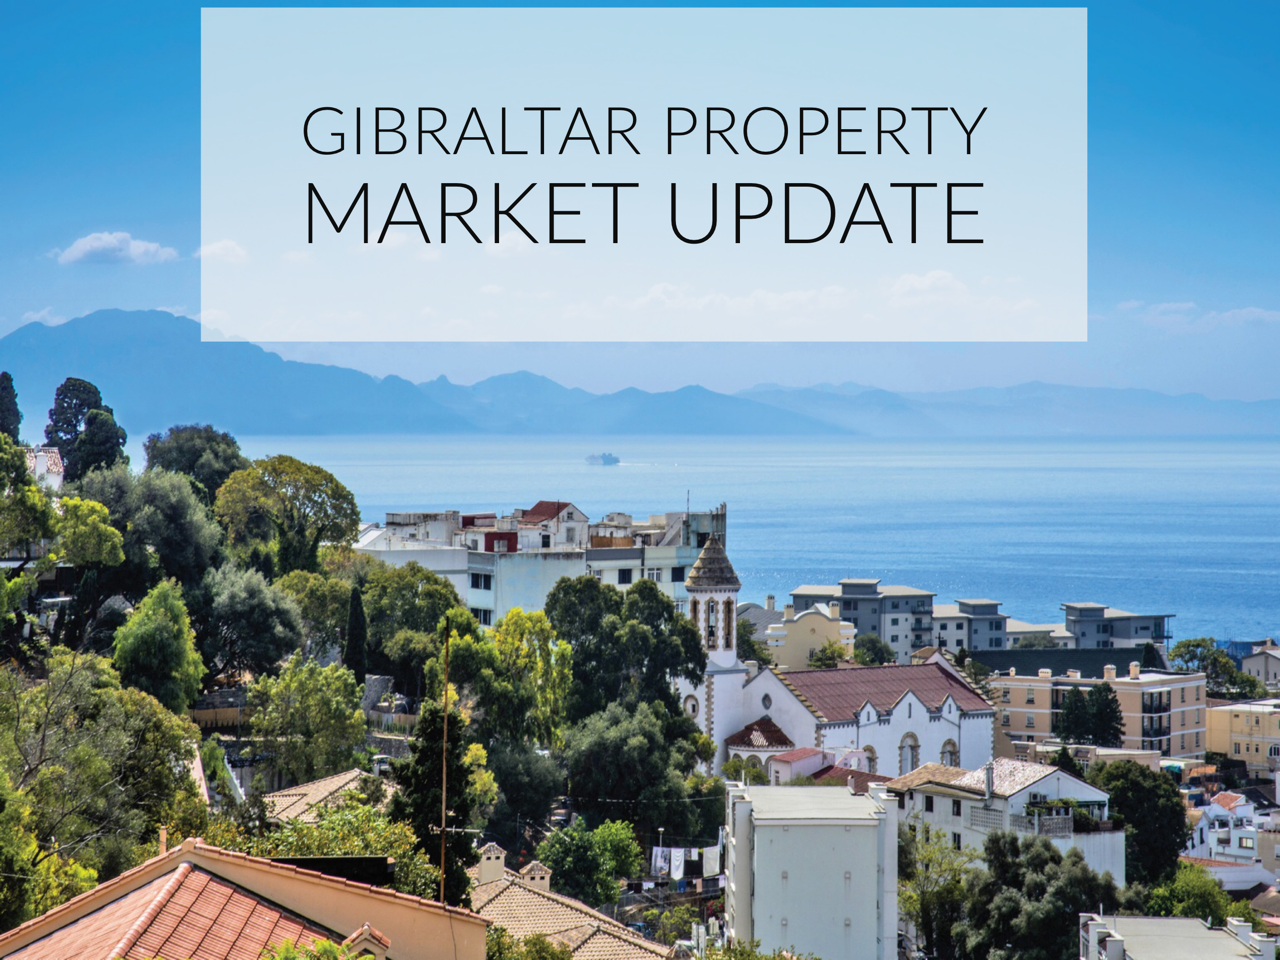 Gibraltar property market update Image